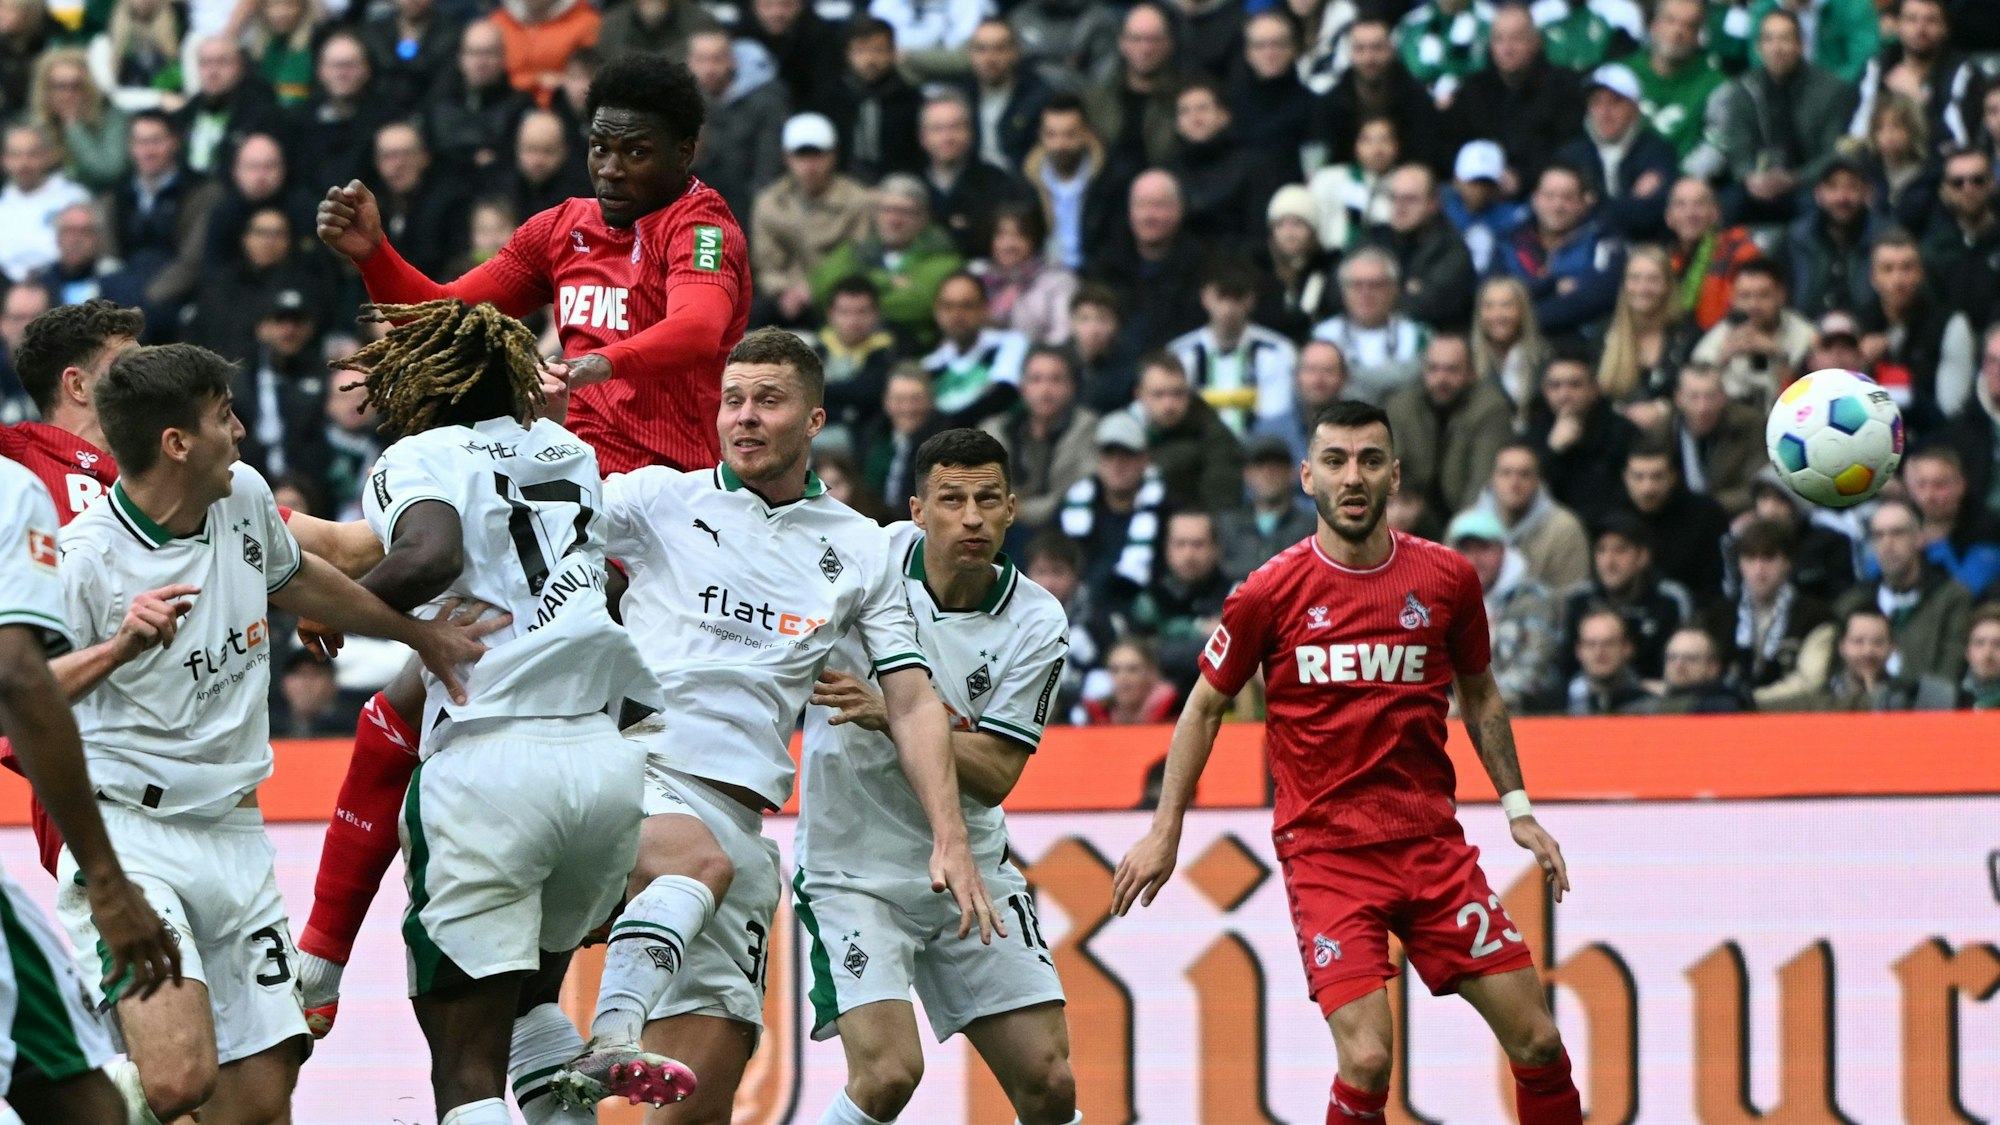 Kölns Offensivspieler Faride Alidou springt am höchsten und köpft zur 2:1-Führung des FC ein.